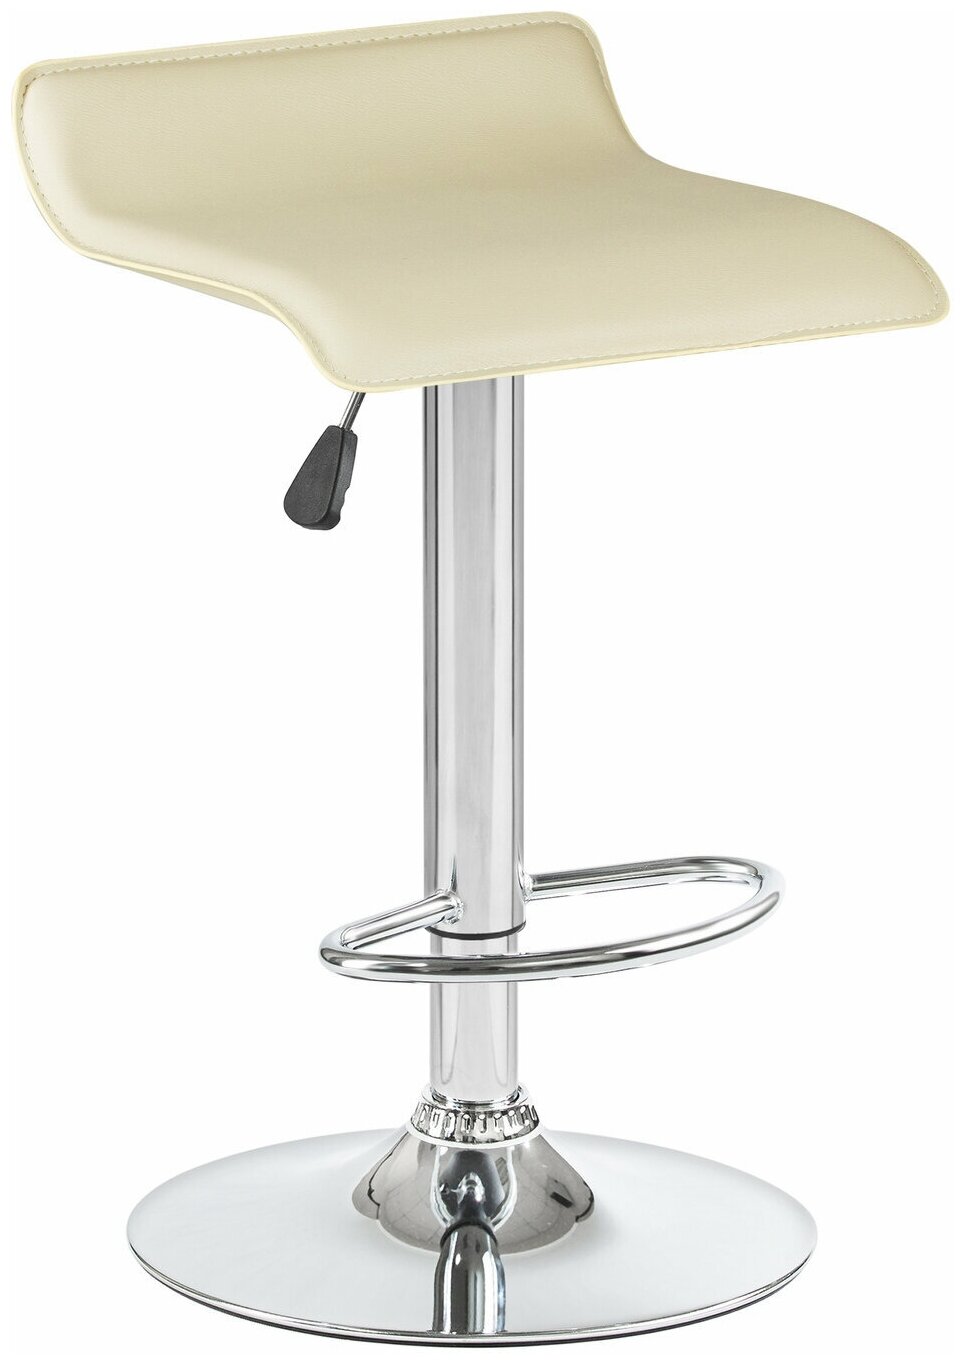 Барный кухонный стул табурет без подлокотников TOMMY LM-3013 высокий регулируемый с подставкой для ног, бежевый экокожа - фотография № 1